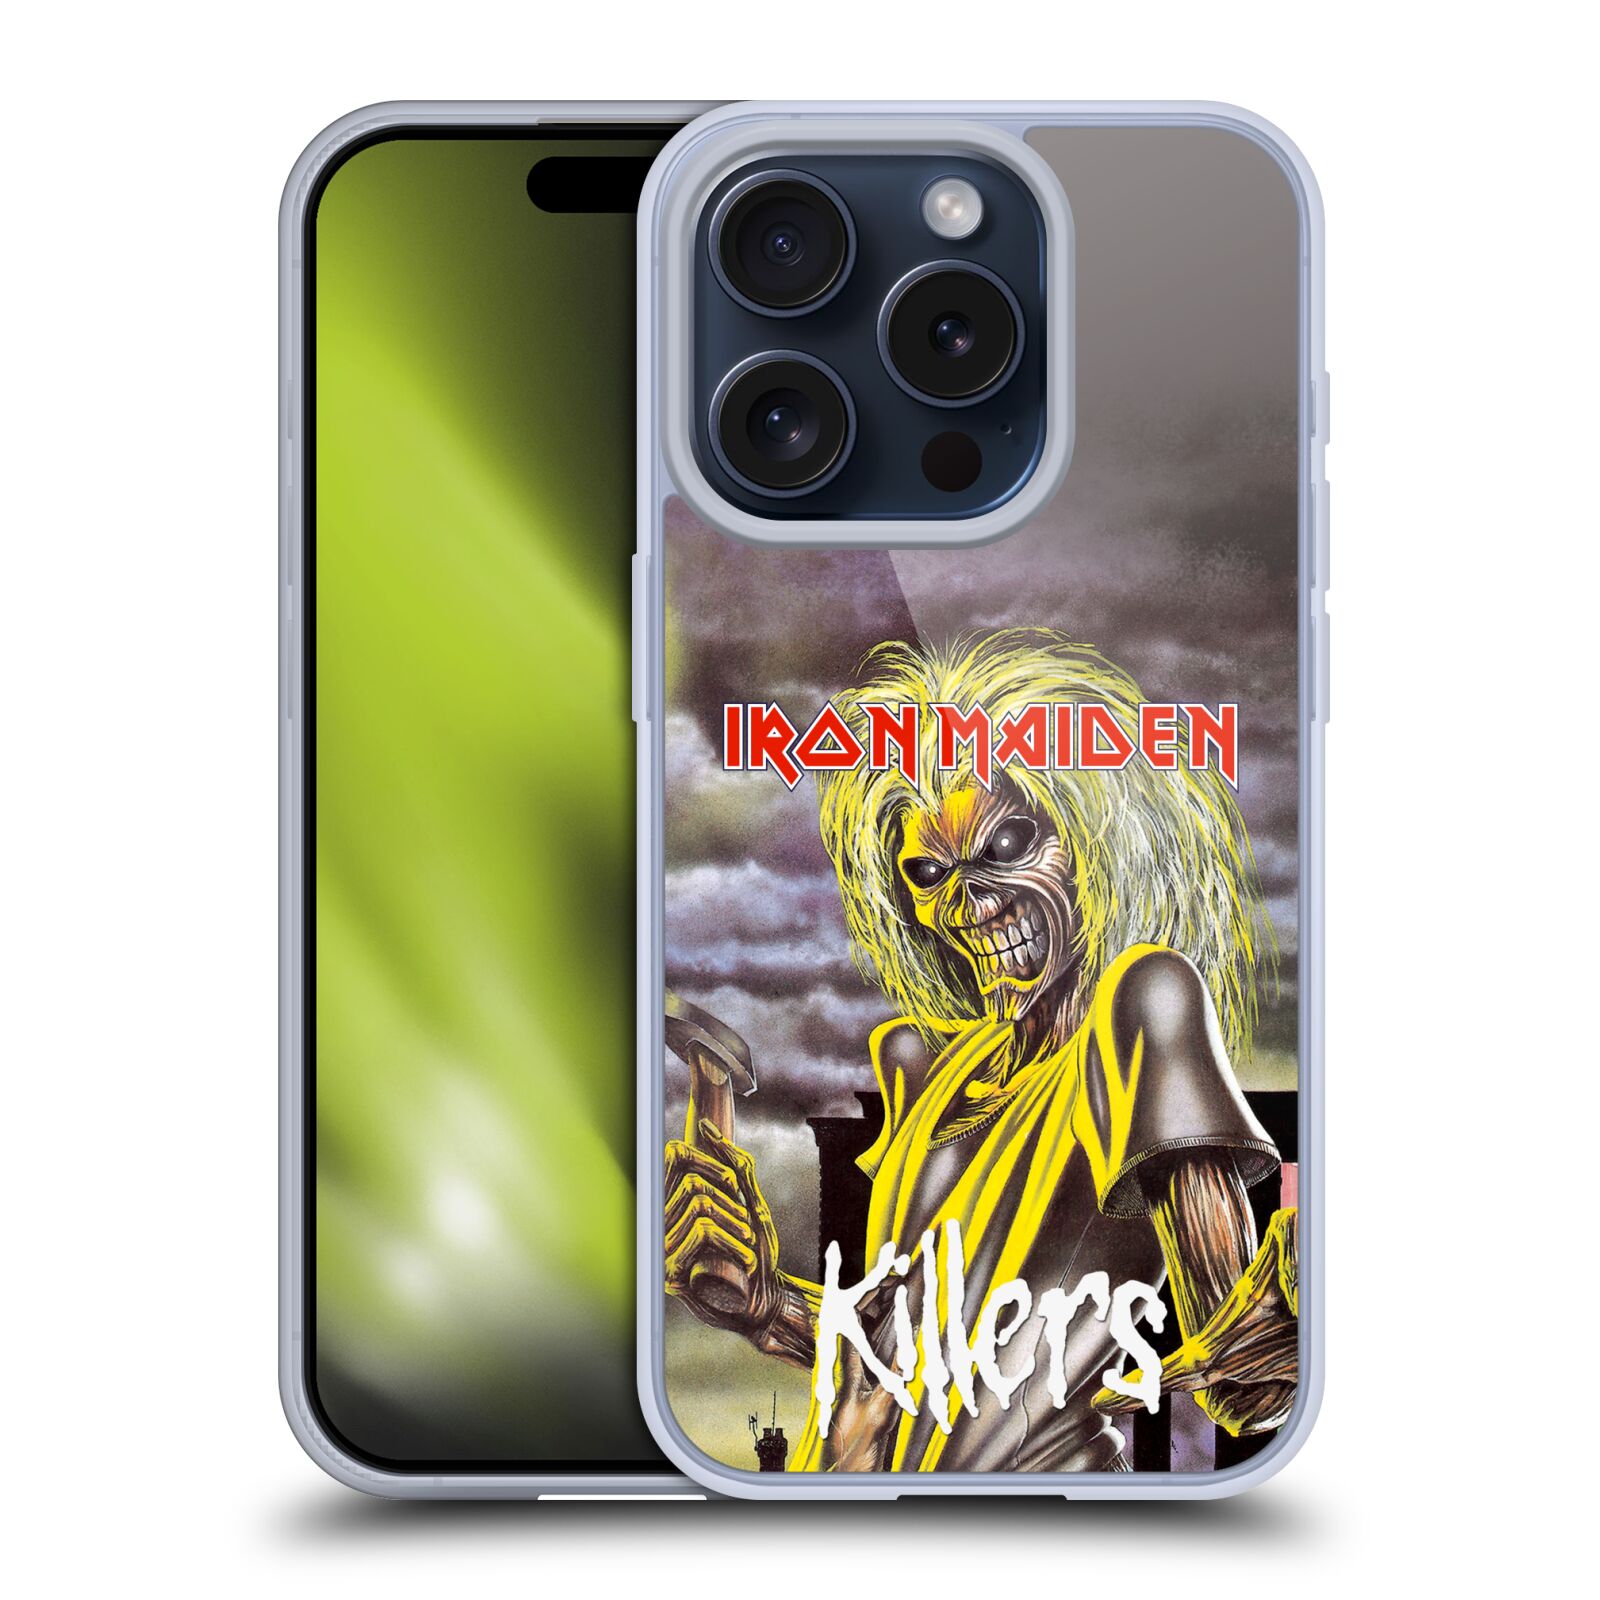 Silikonové lesklé pouzdro na mobil Apple iPhone 15 Pro - Head Case - Iron Maiden - Killers (Silikonový lesklý kryt, obal, pouzdro na mobilní telefon Apple iPhone 15 Pro s motivem Iron Maiden - Killers)